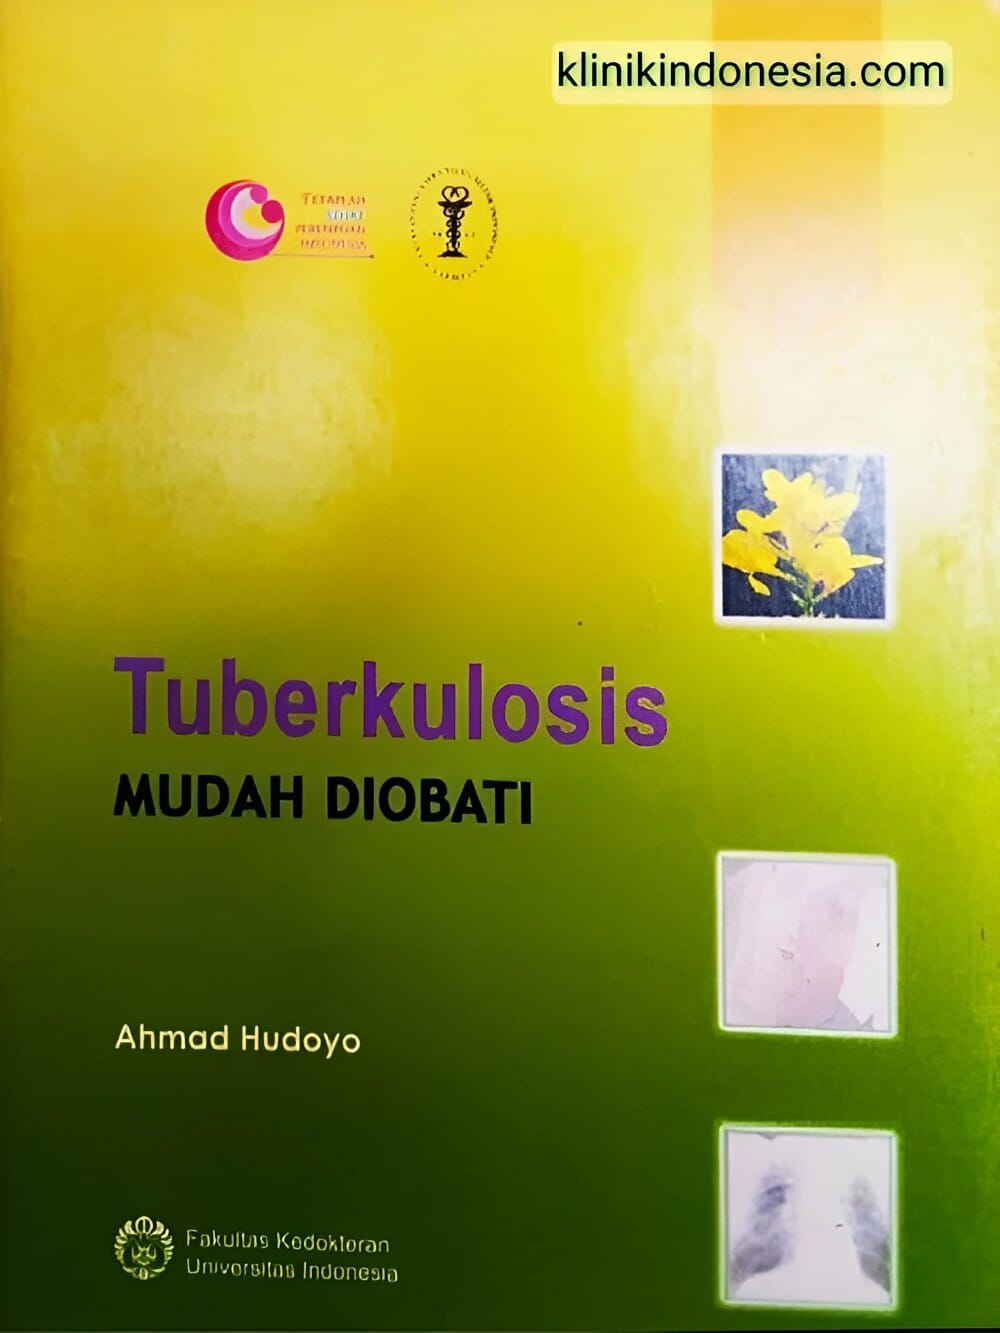 Gambar Tuberkulosis Mudah Diobati